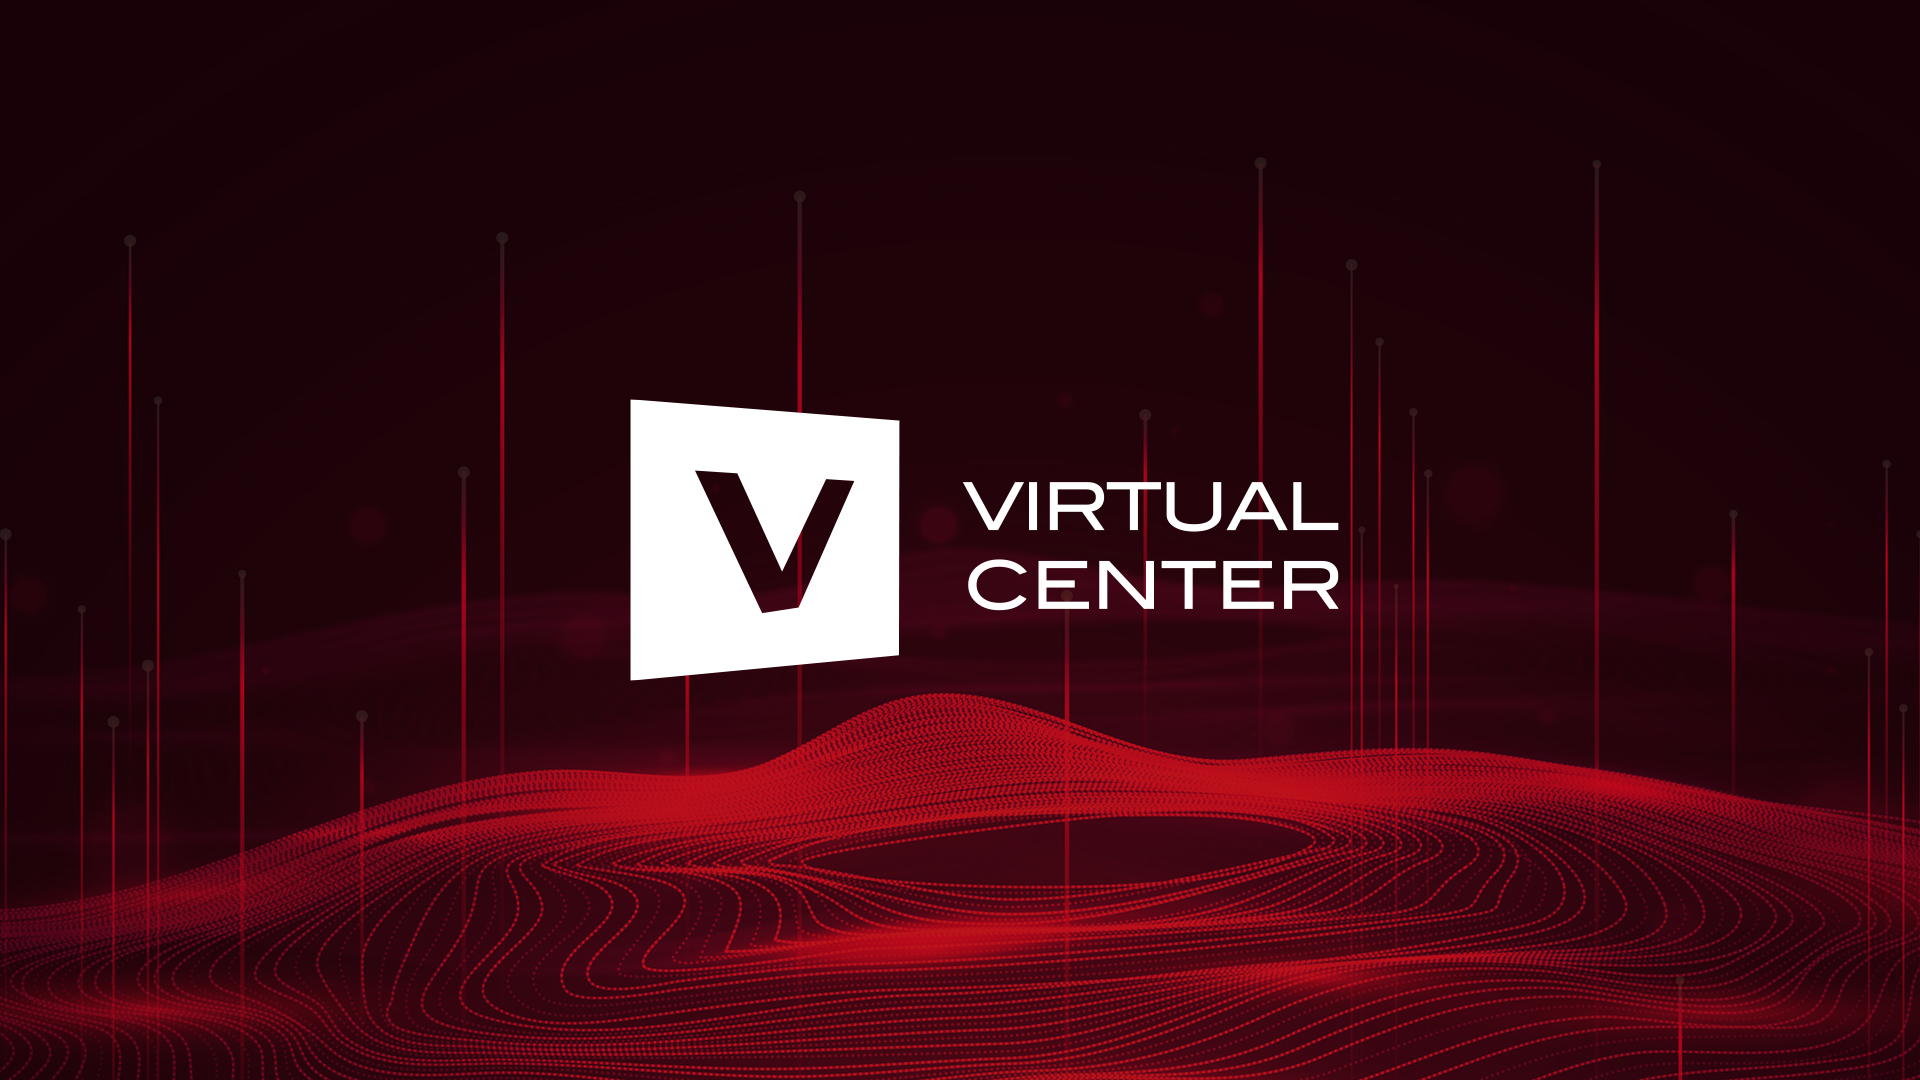 Virtual Center